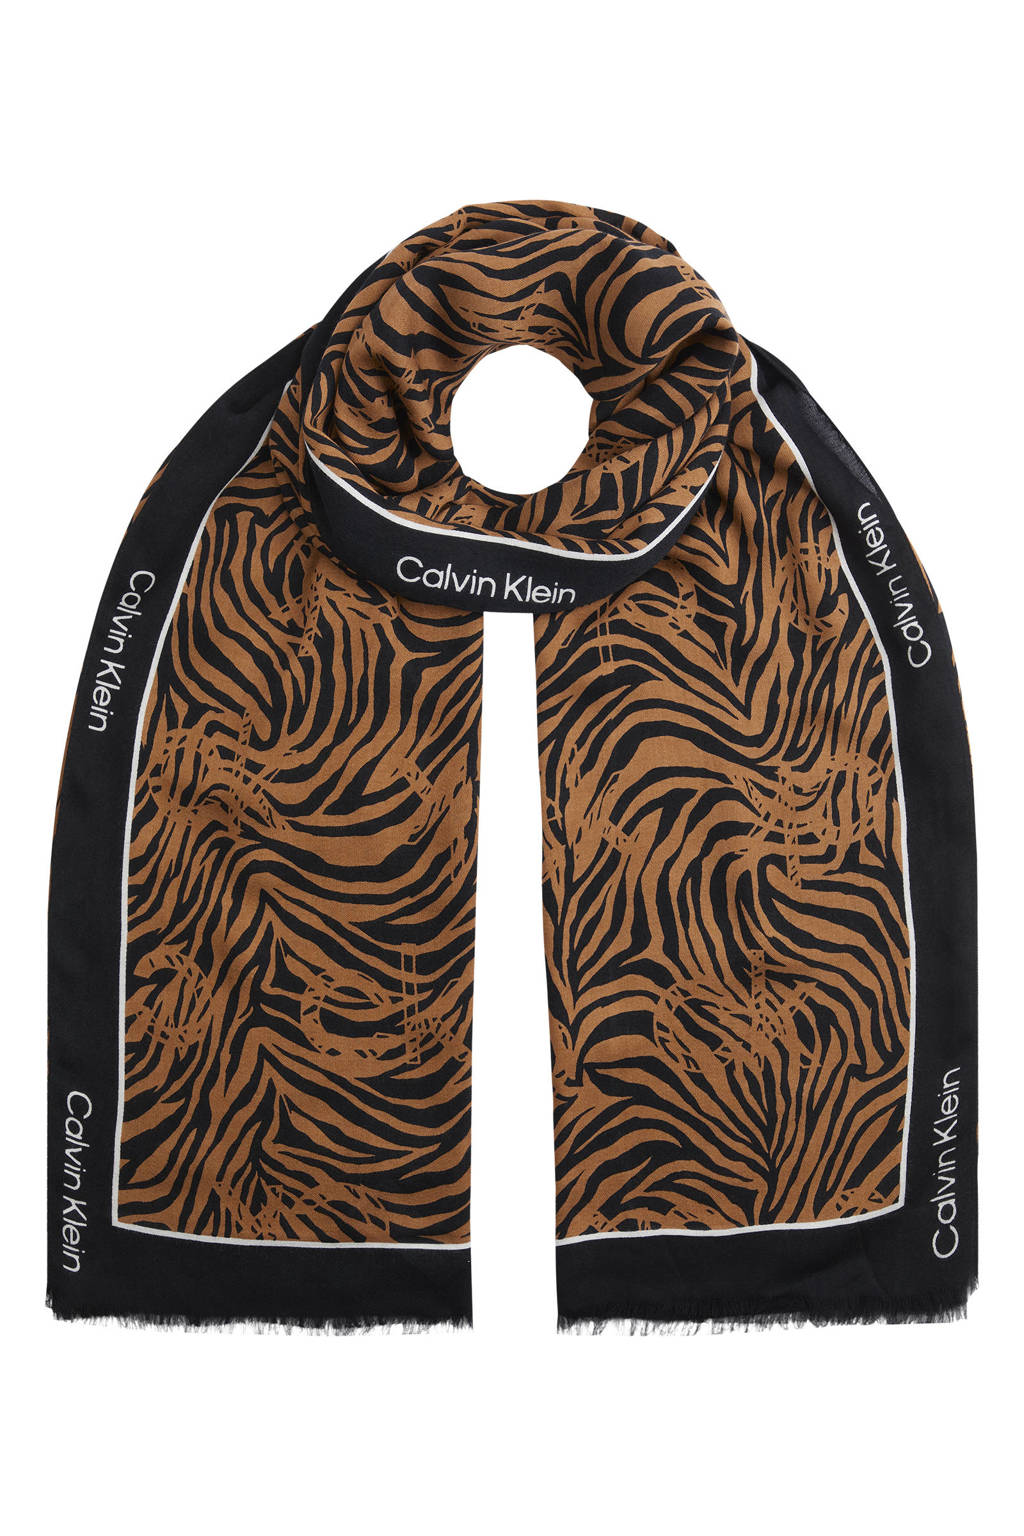 Calvin Klein sjaal met tijgerprint camel, camel/zwart/wi